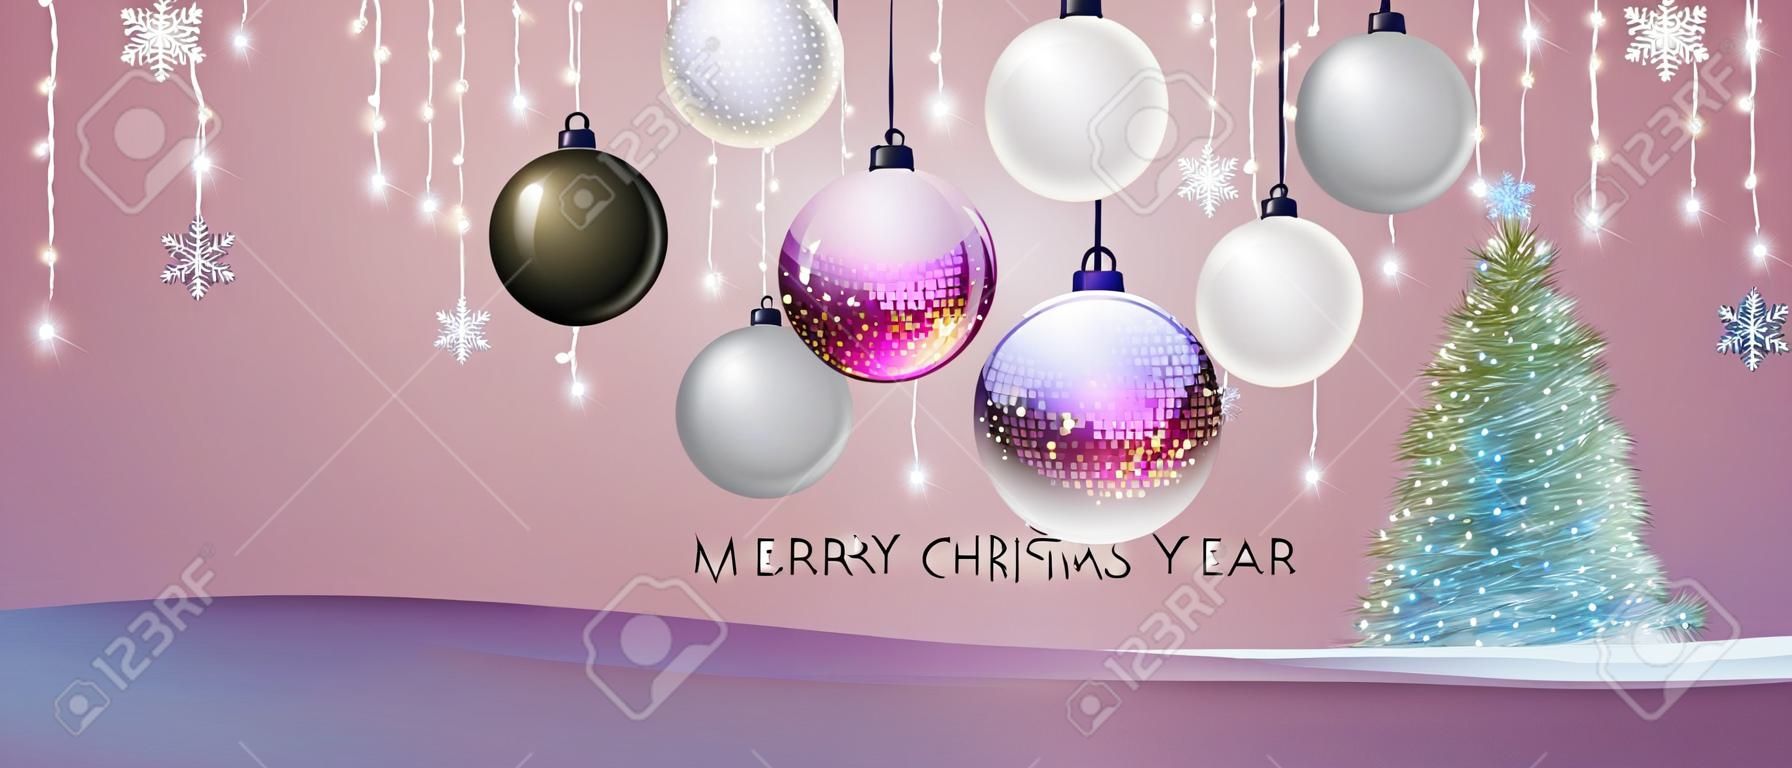 Plakat der frohen Weihnachten und des guten Rutsch ins Neue Jahr mit Weihnachtsfeiertagsdekorationen. Weihnachtsfeiertagshintergrund. Vektor-Illustration